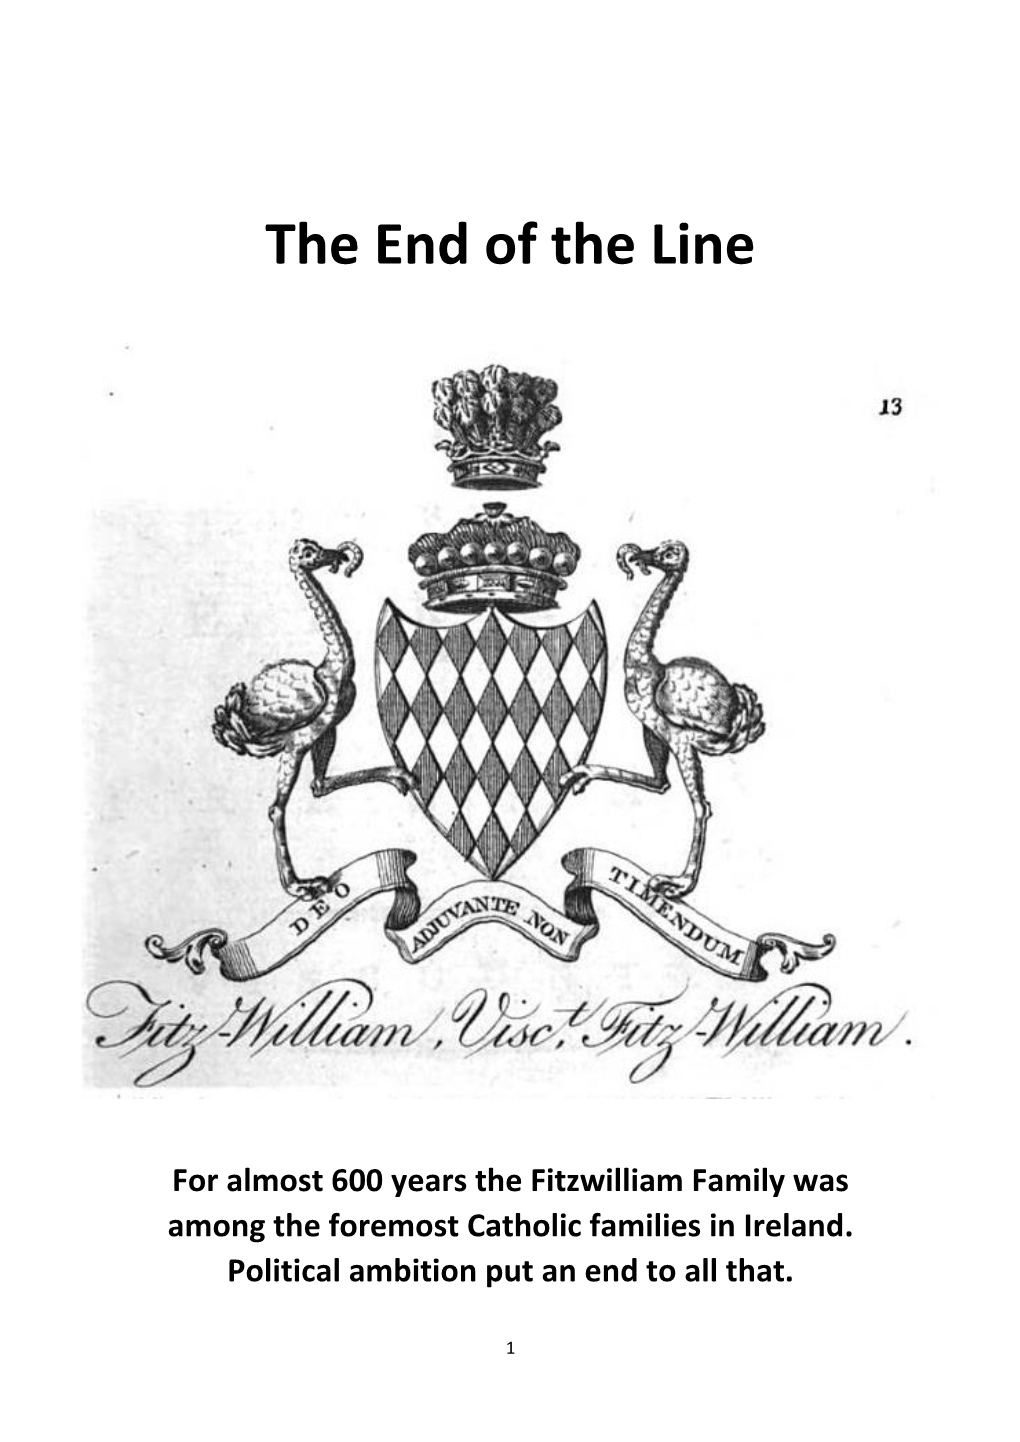 Viscount Fitzwilliam of Merrion